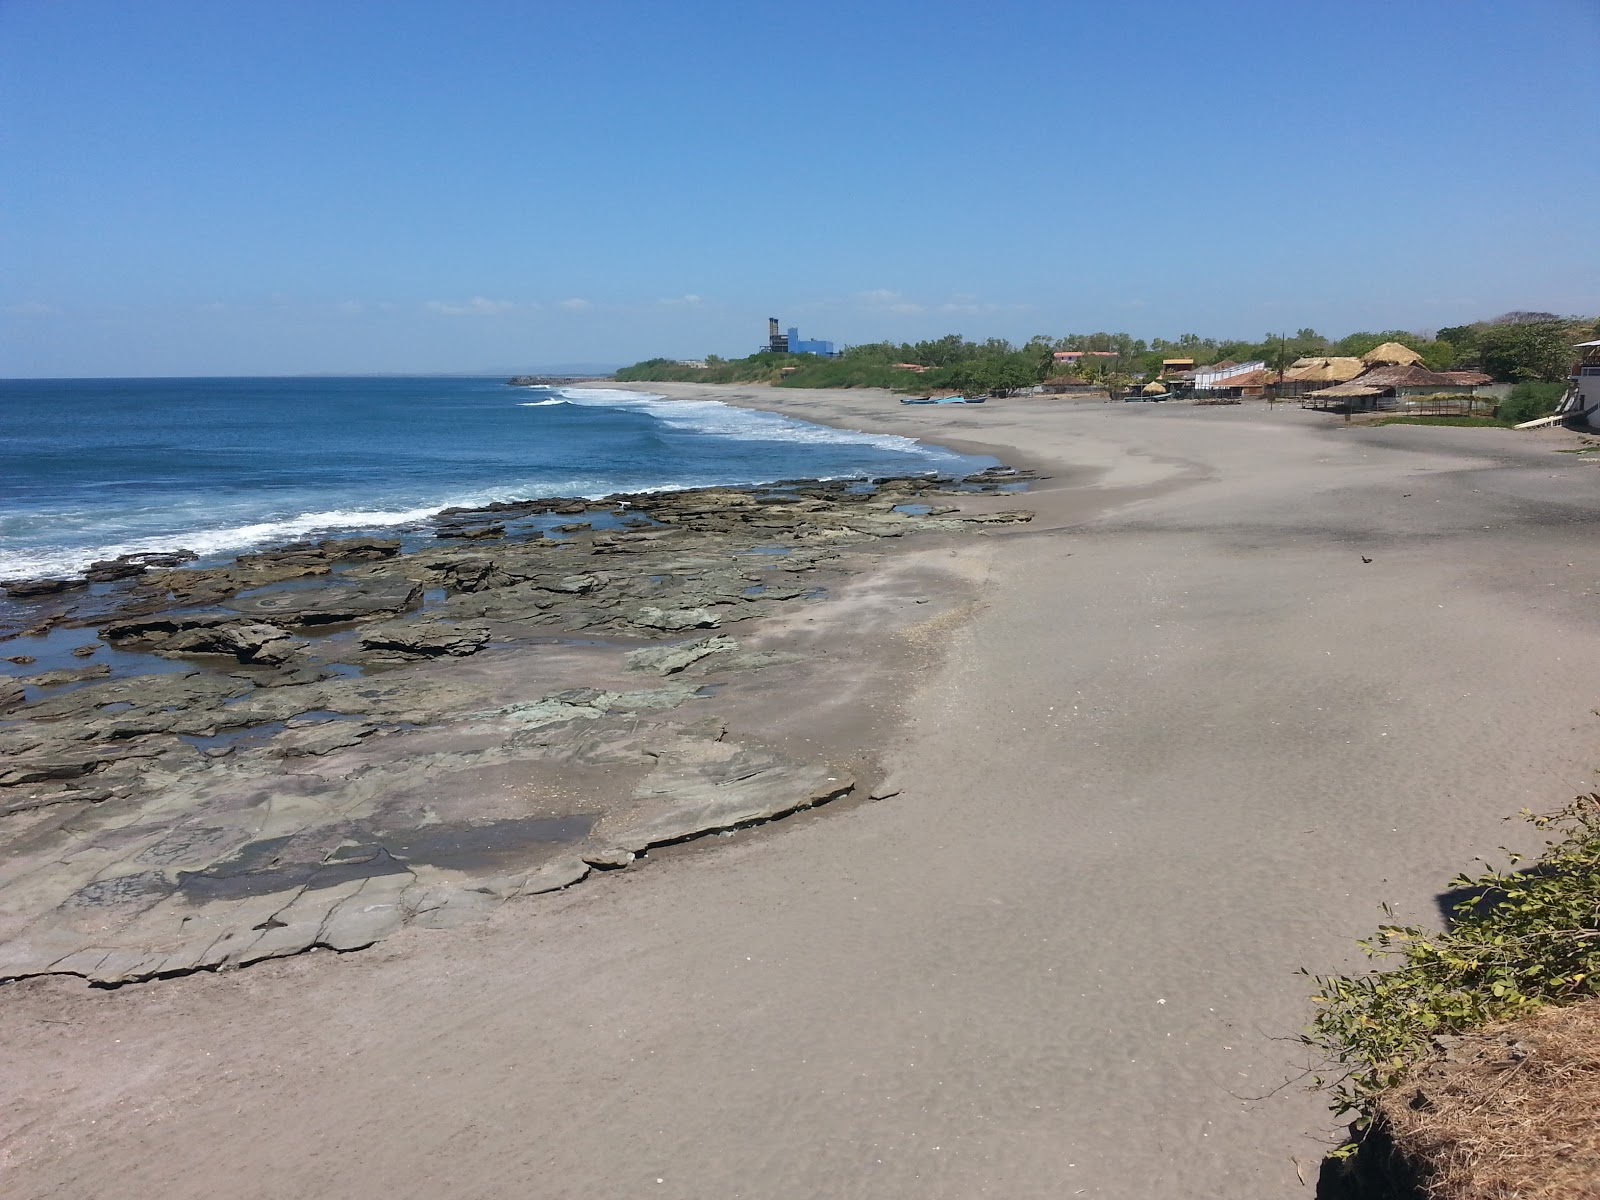 Foto von Miramar beach mit grauer sand&steine Oberfläche